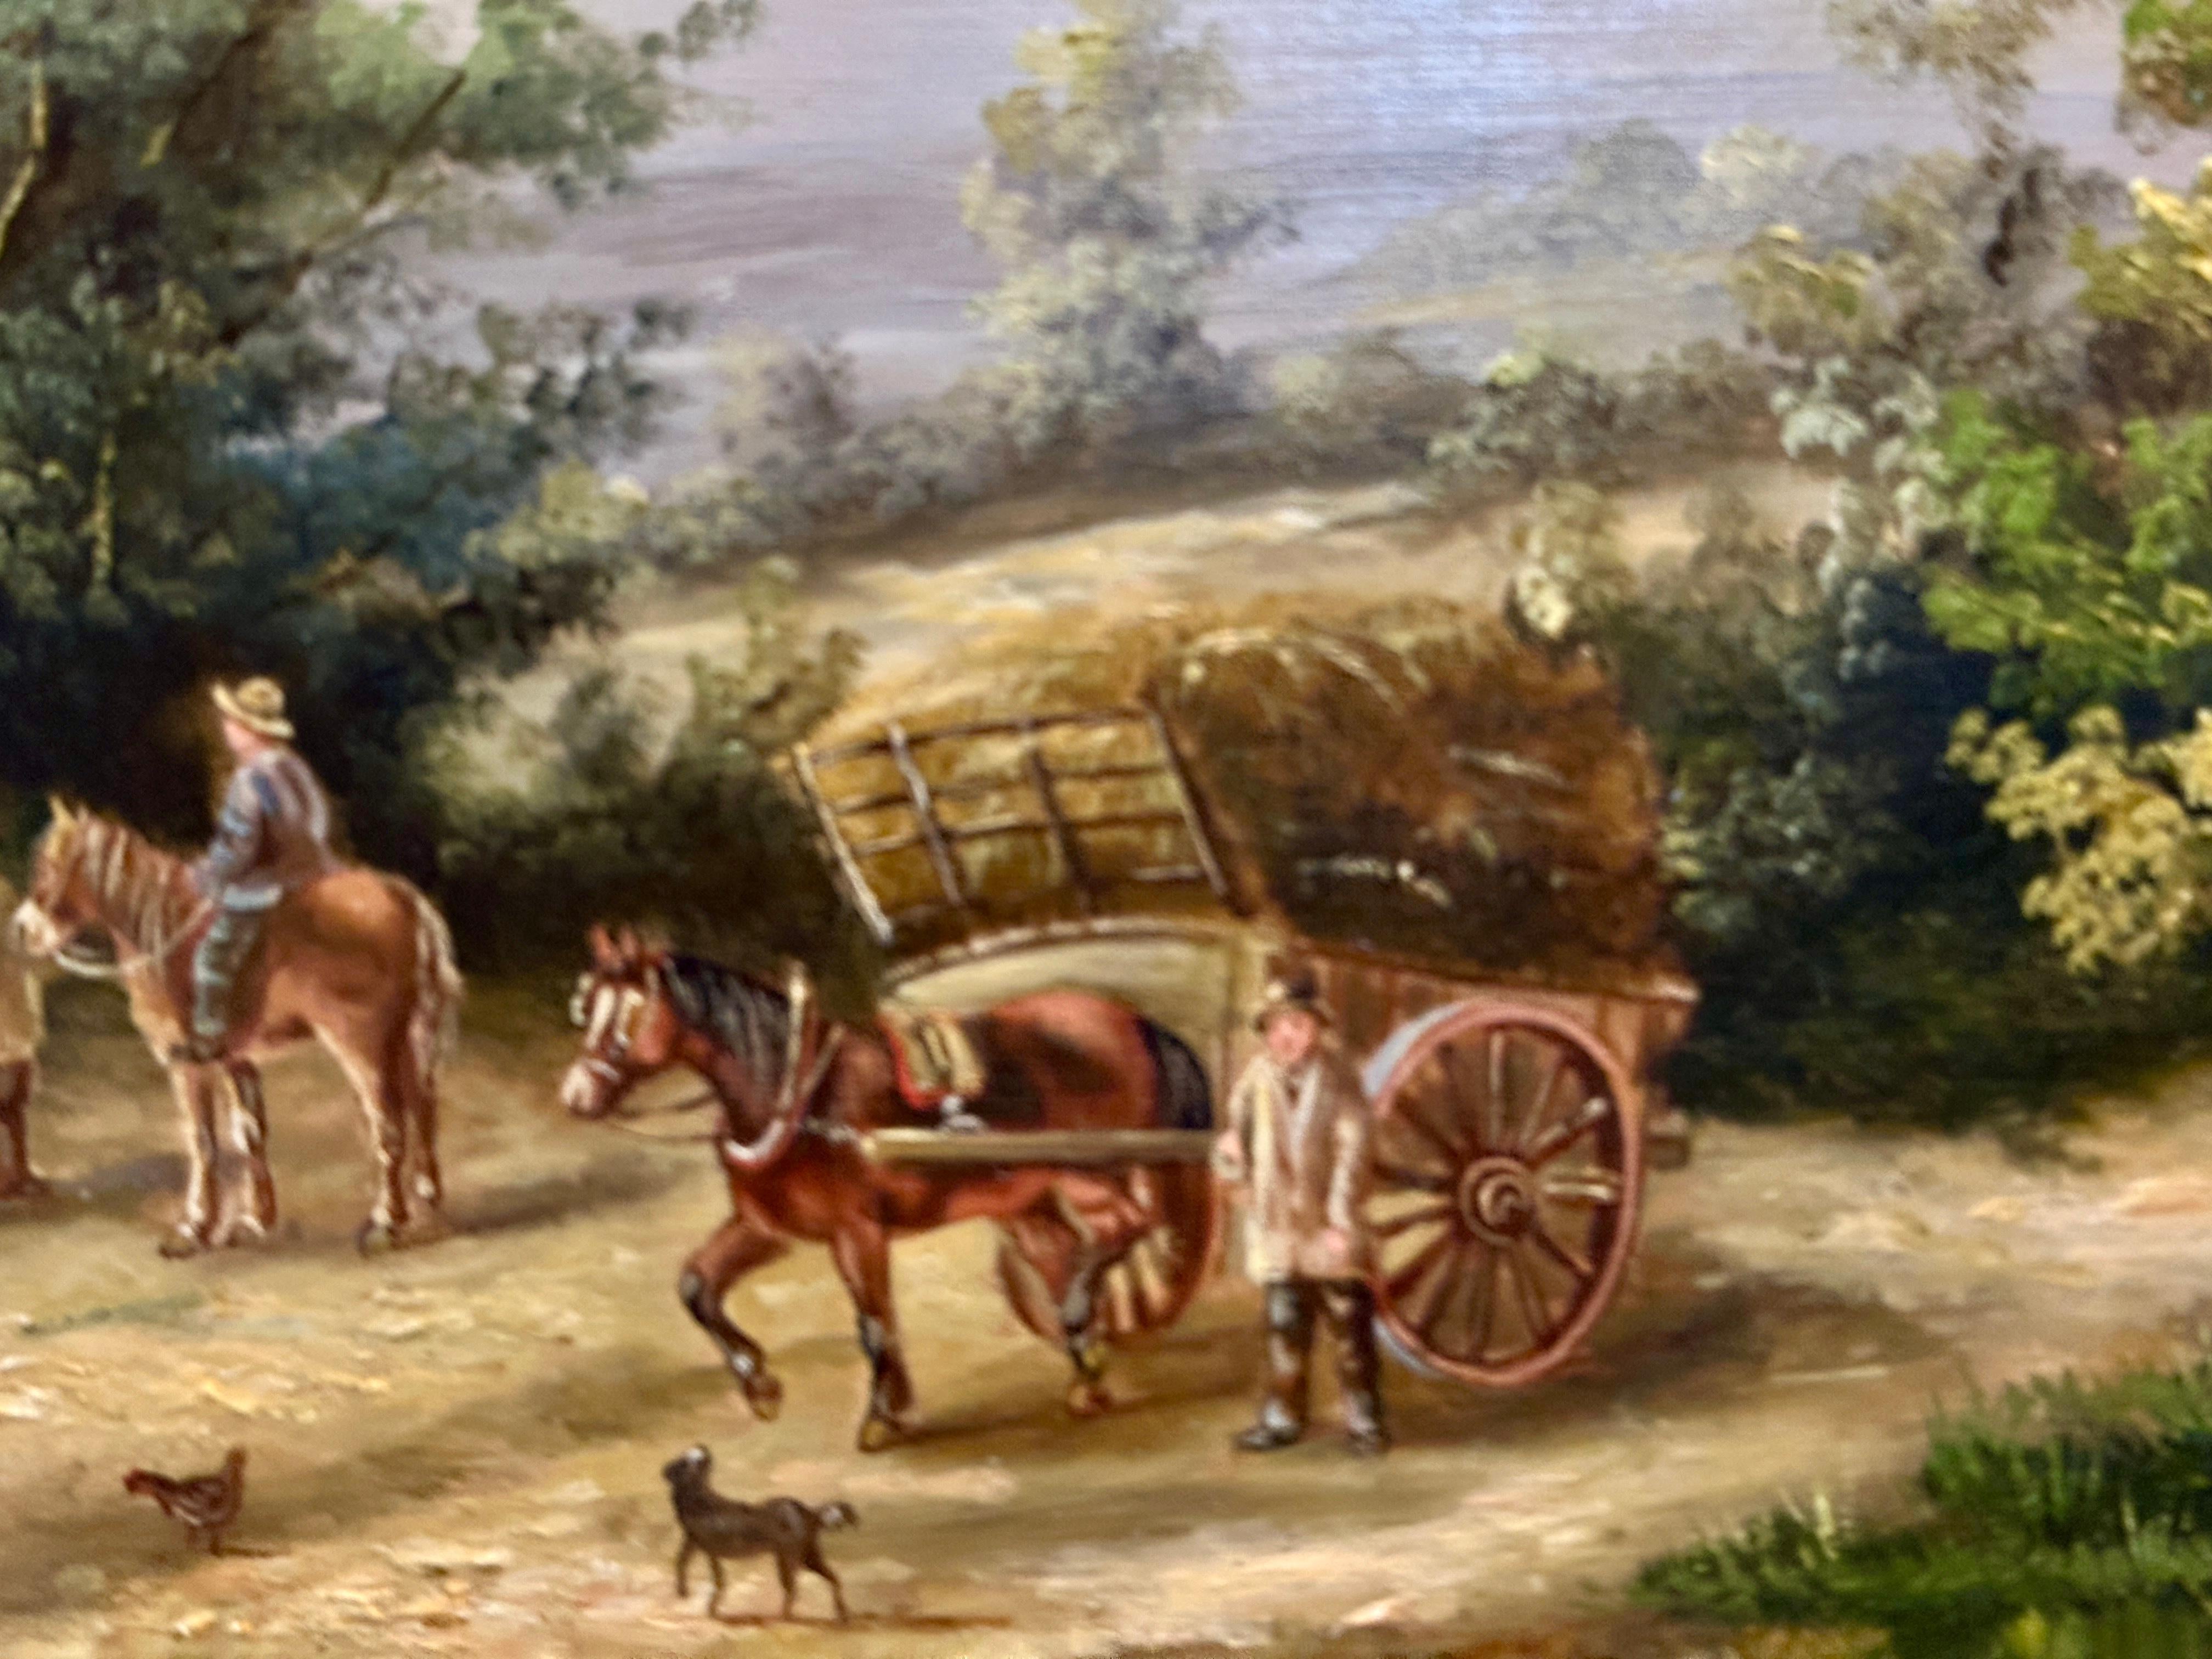 Georgine LARA

Paysage de village anglais

Une peinture de Georgina LARA représentant une scène de village anglais du XIXe siècle offre un portrait charmant et évocateur d'une époque révolue, capturant l'essence de la vie rurale à cette époque. Les